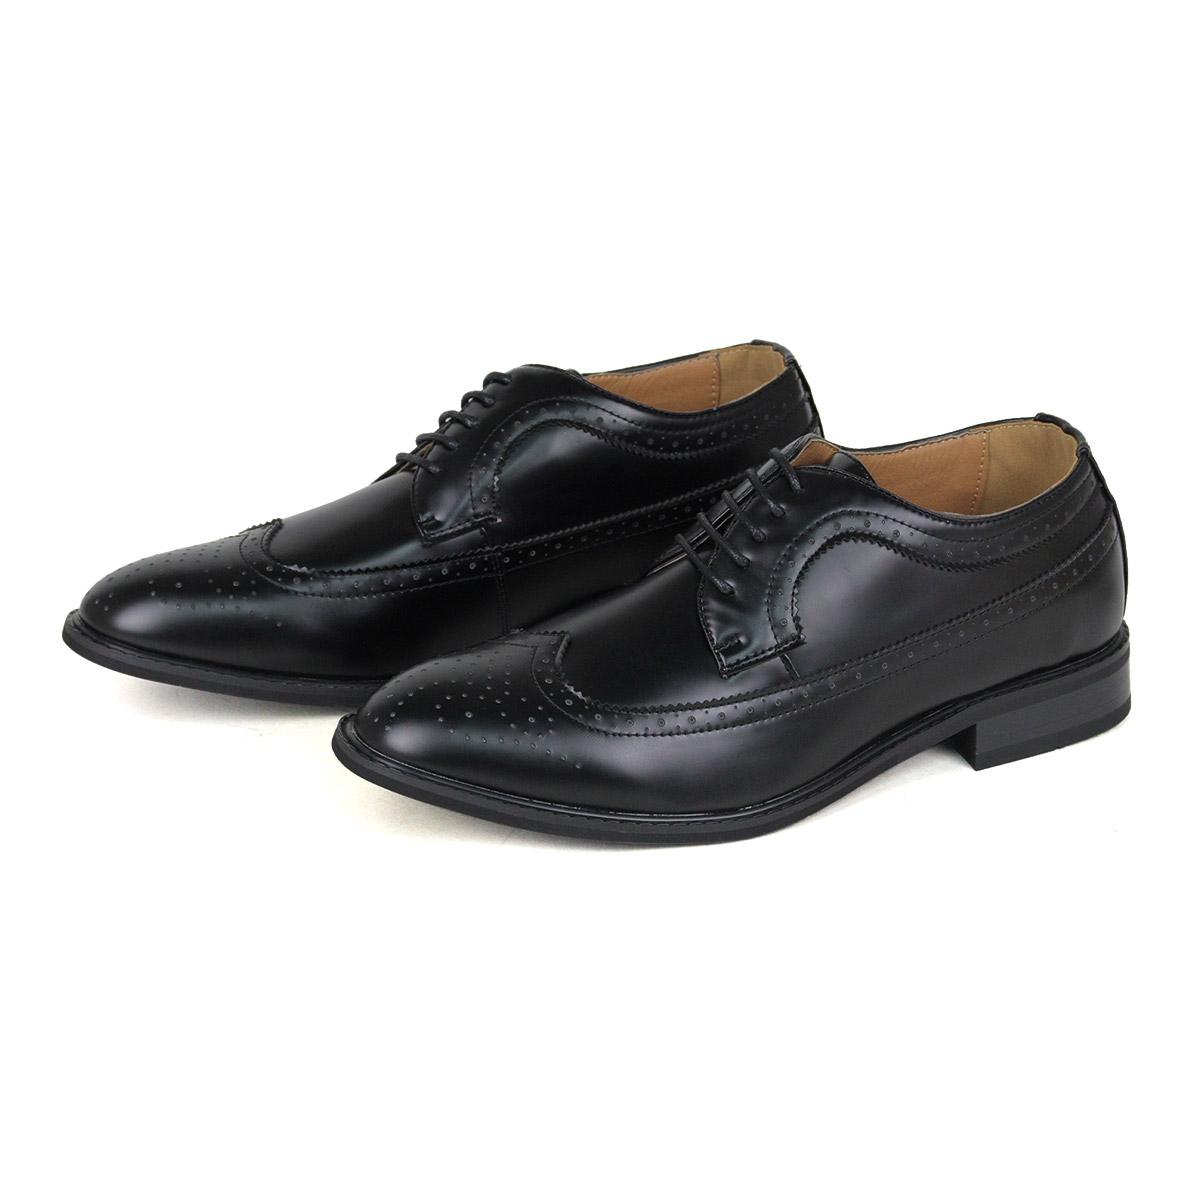 オックスフォードシューズ メンズ 革靴 黒 ウイングチップ 24.5-30cm No.802 ラスア...